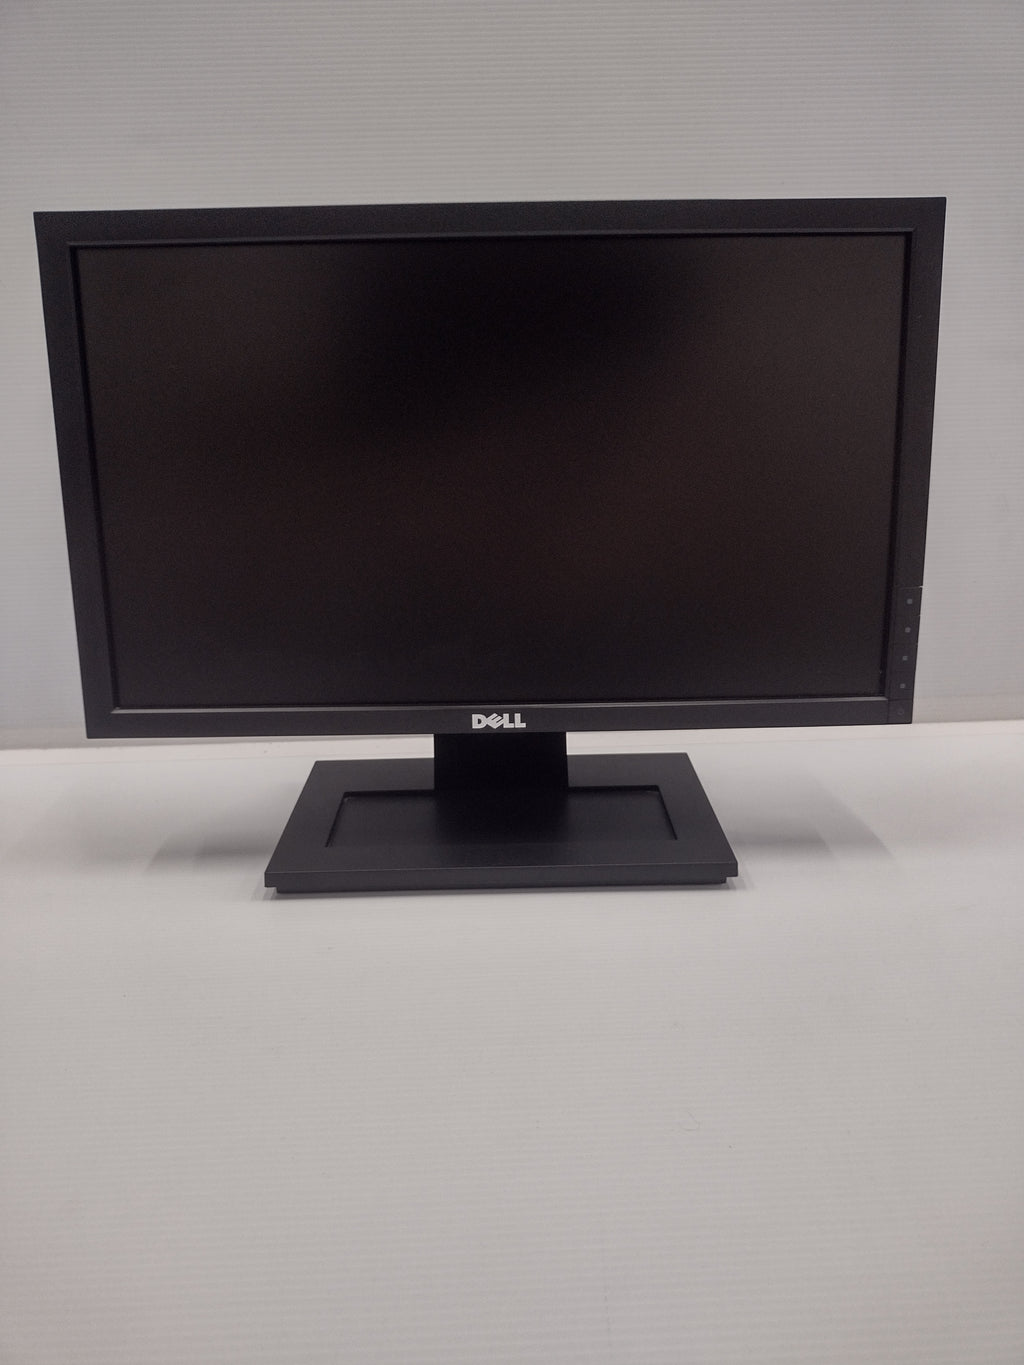 DELL E1910Hc Widescreen 19" 1360 x 768 16:9 LCD Monitor